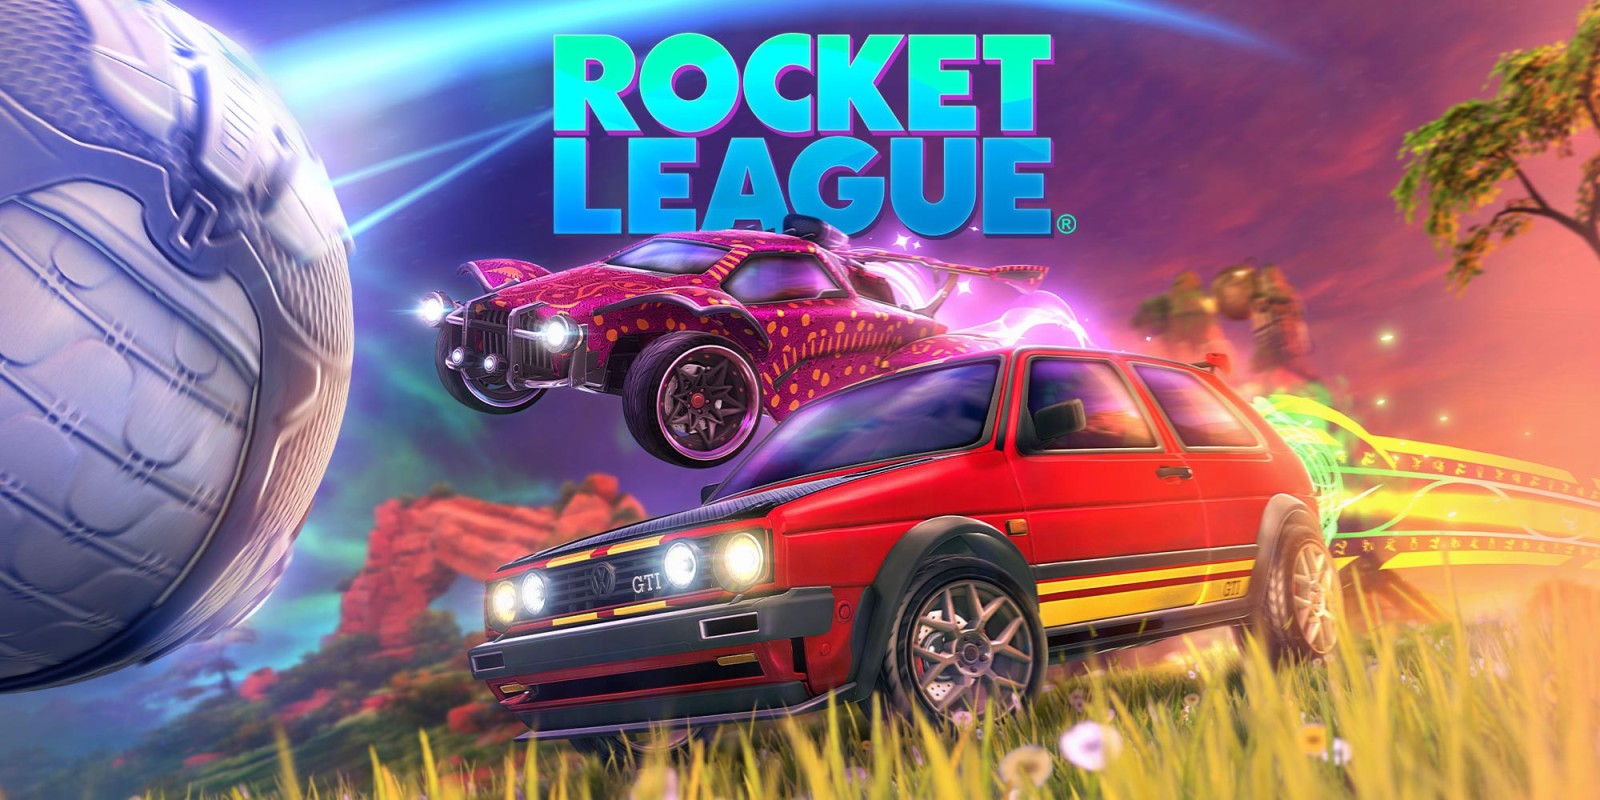 Is Rocket League On Steam?